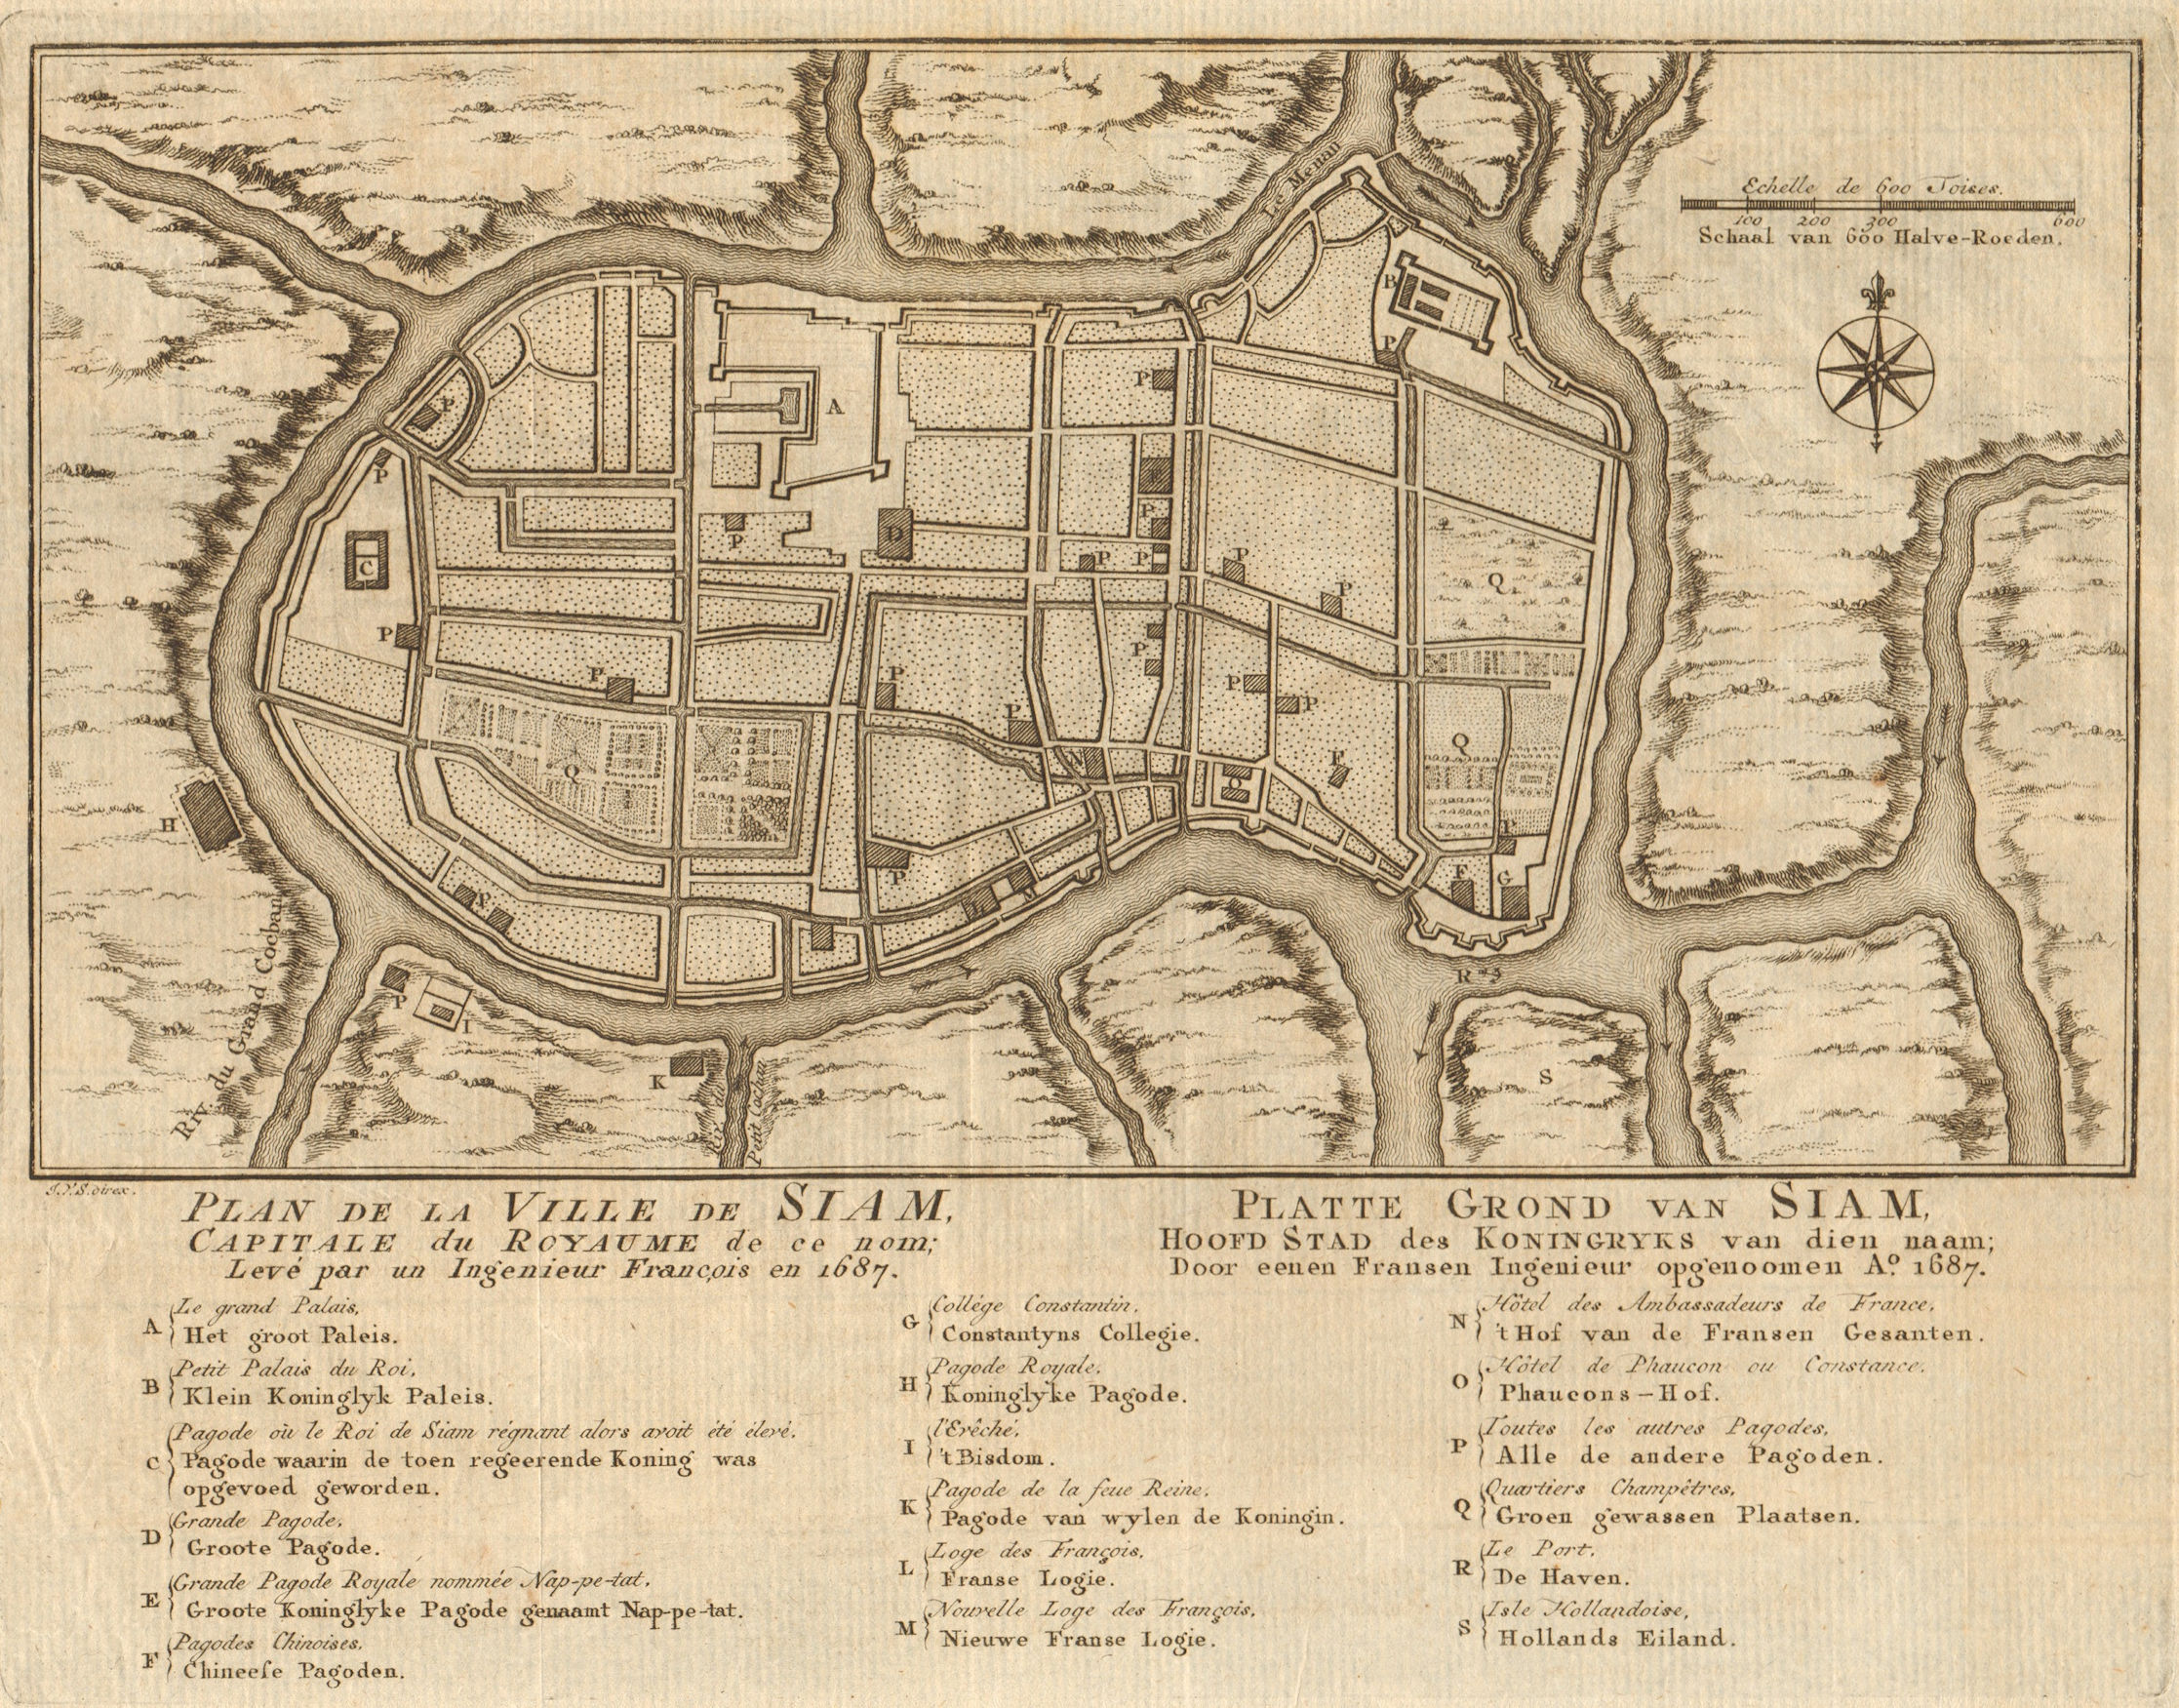 'Plan de la Ville de Siam'. Ayutthaya city plan, Thailand BELLIN/SCHLEY 1755 map